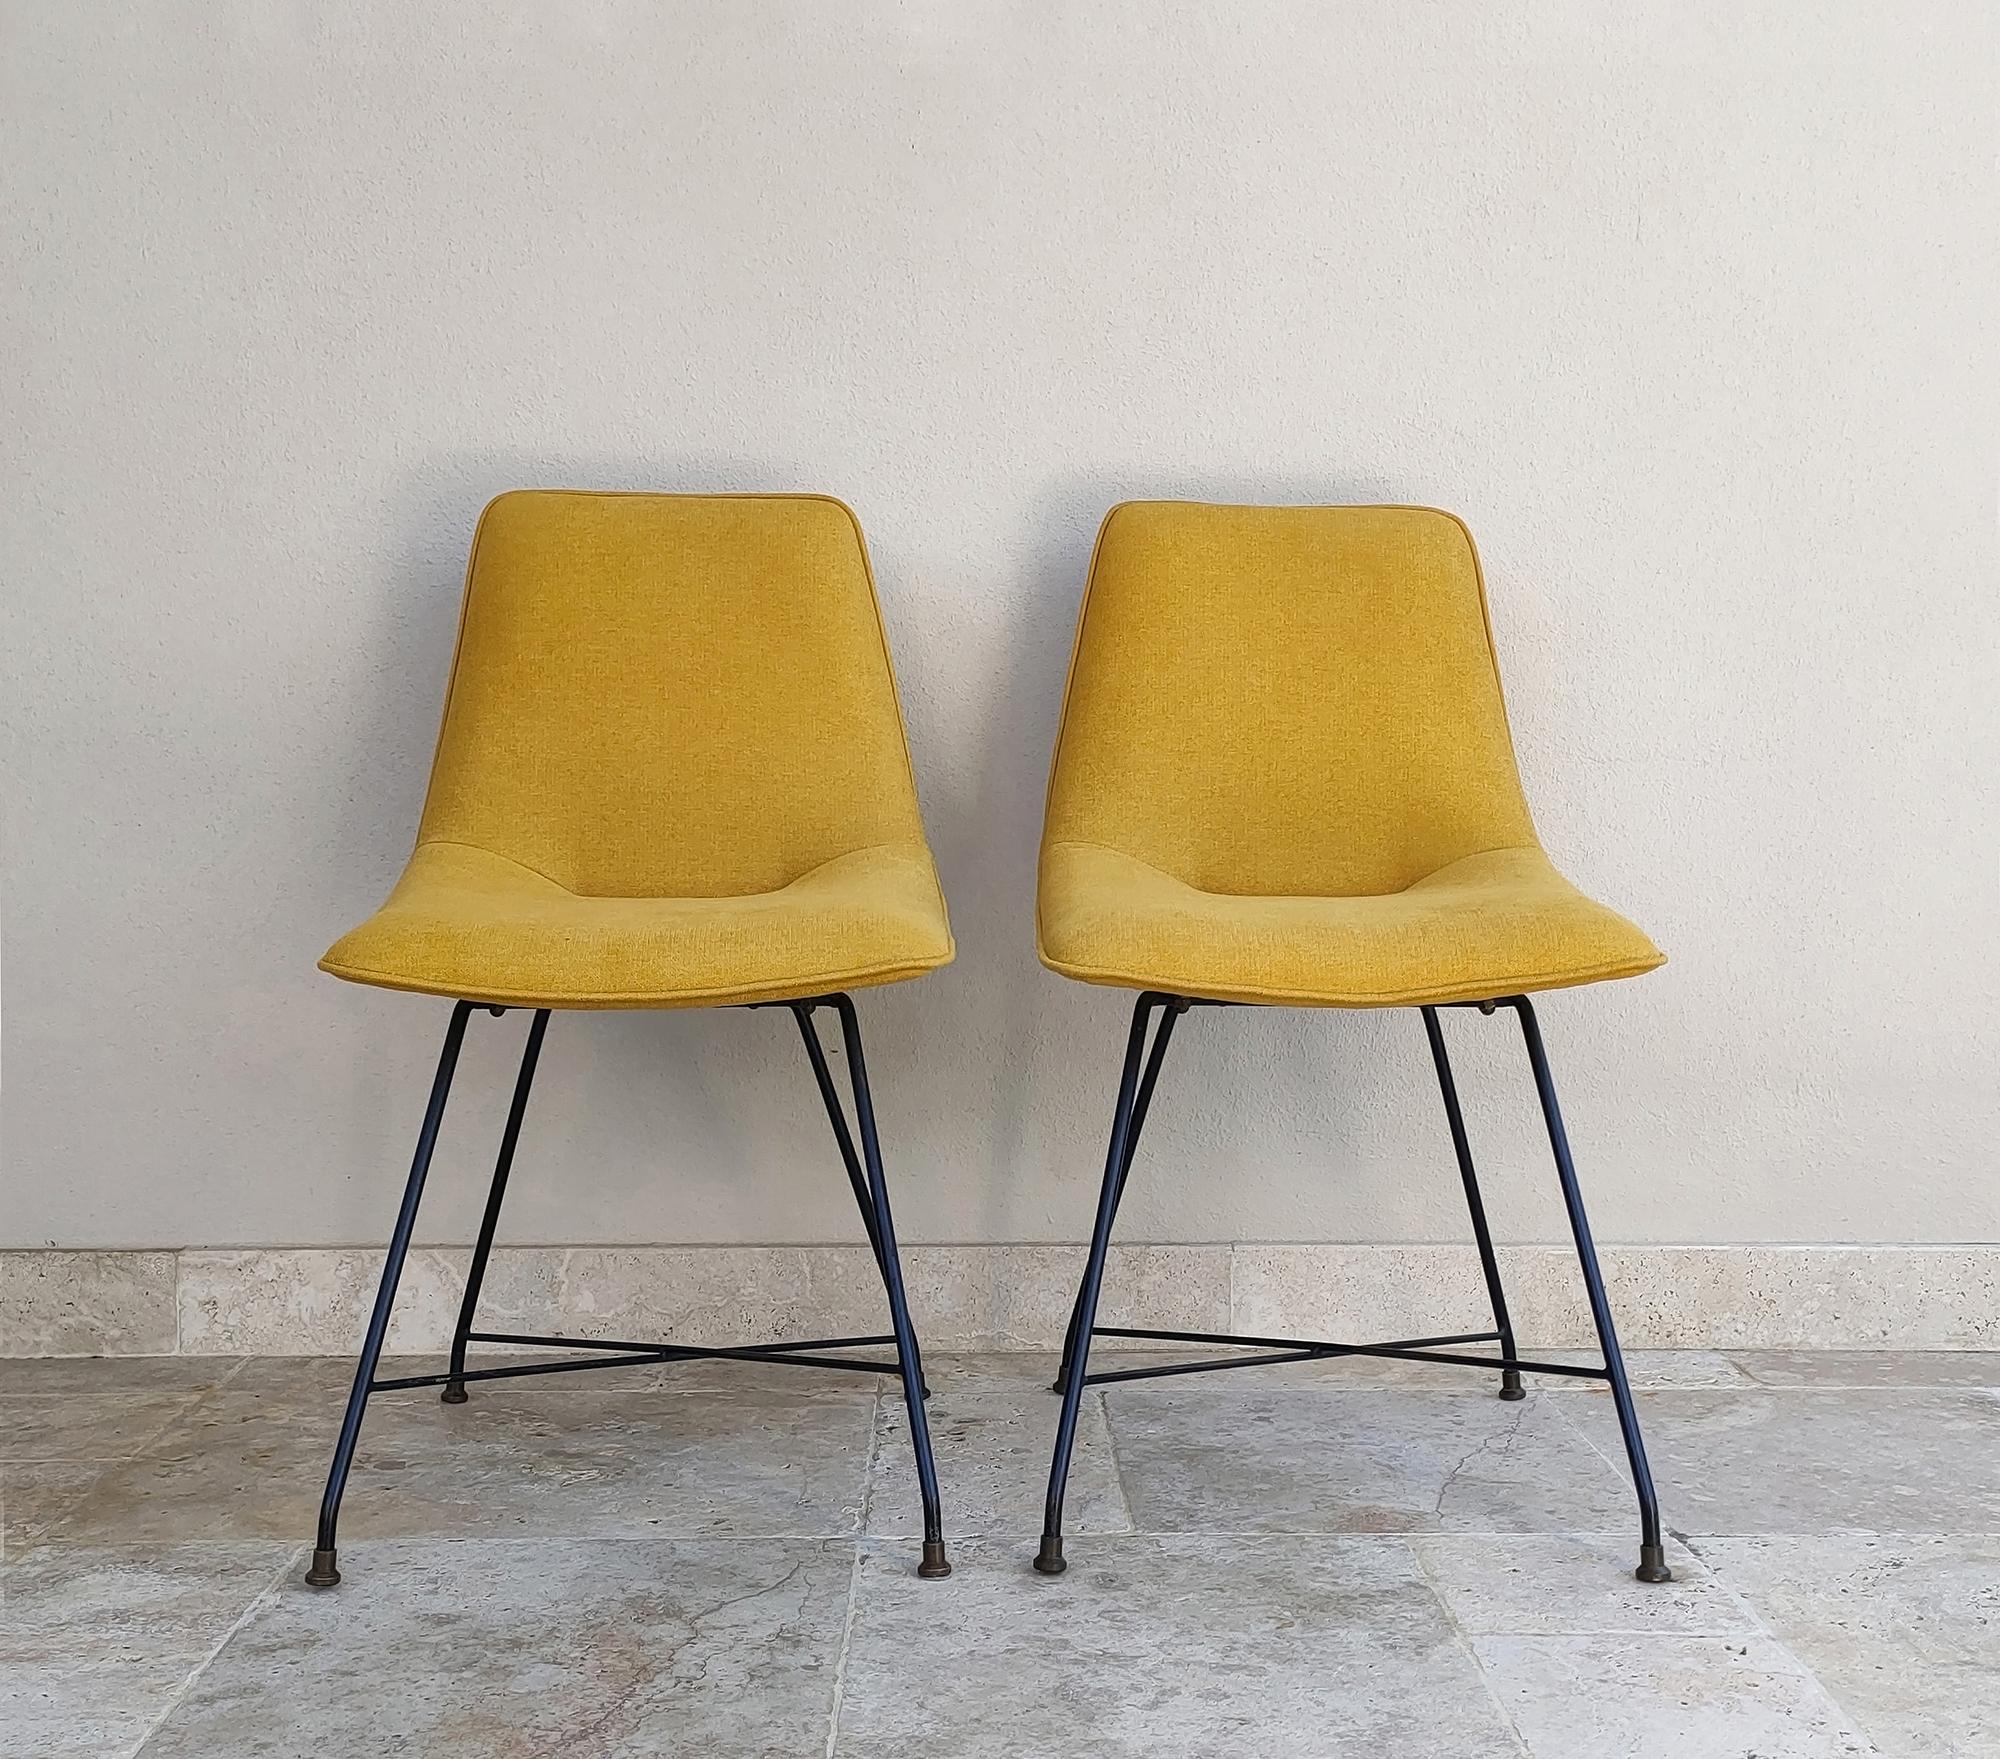 Satz von zwei Aster-Stühlen, entworfen von Augusto Bozzi in den 1950er Jahren und hergestellt von Fratelli Saporiti.
Das Hauptmerkmal der Stühle ist die ikonische und elegante Metallstruktur der Beine, typisch für das Design von Augusto Bozzi.
Die